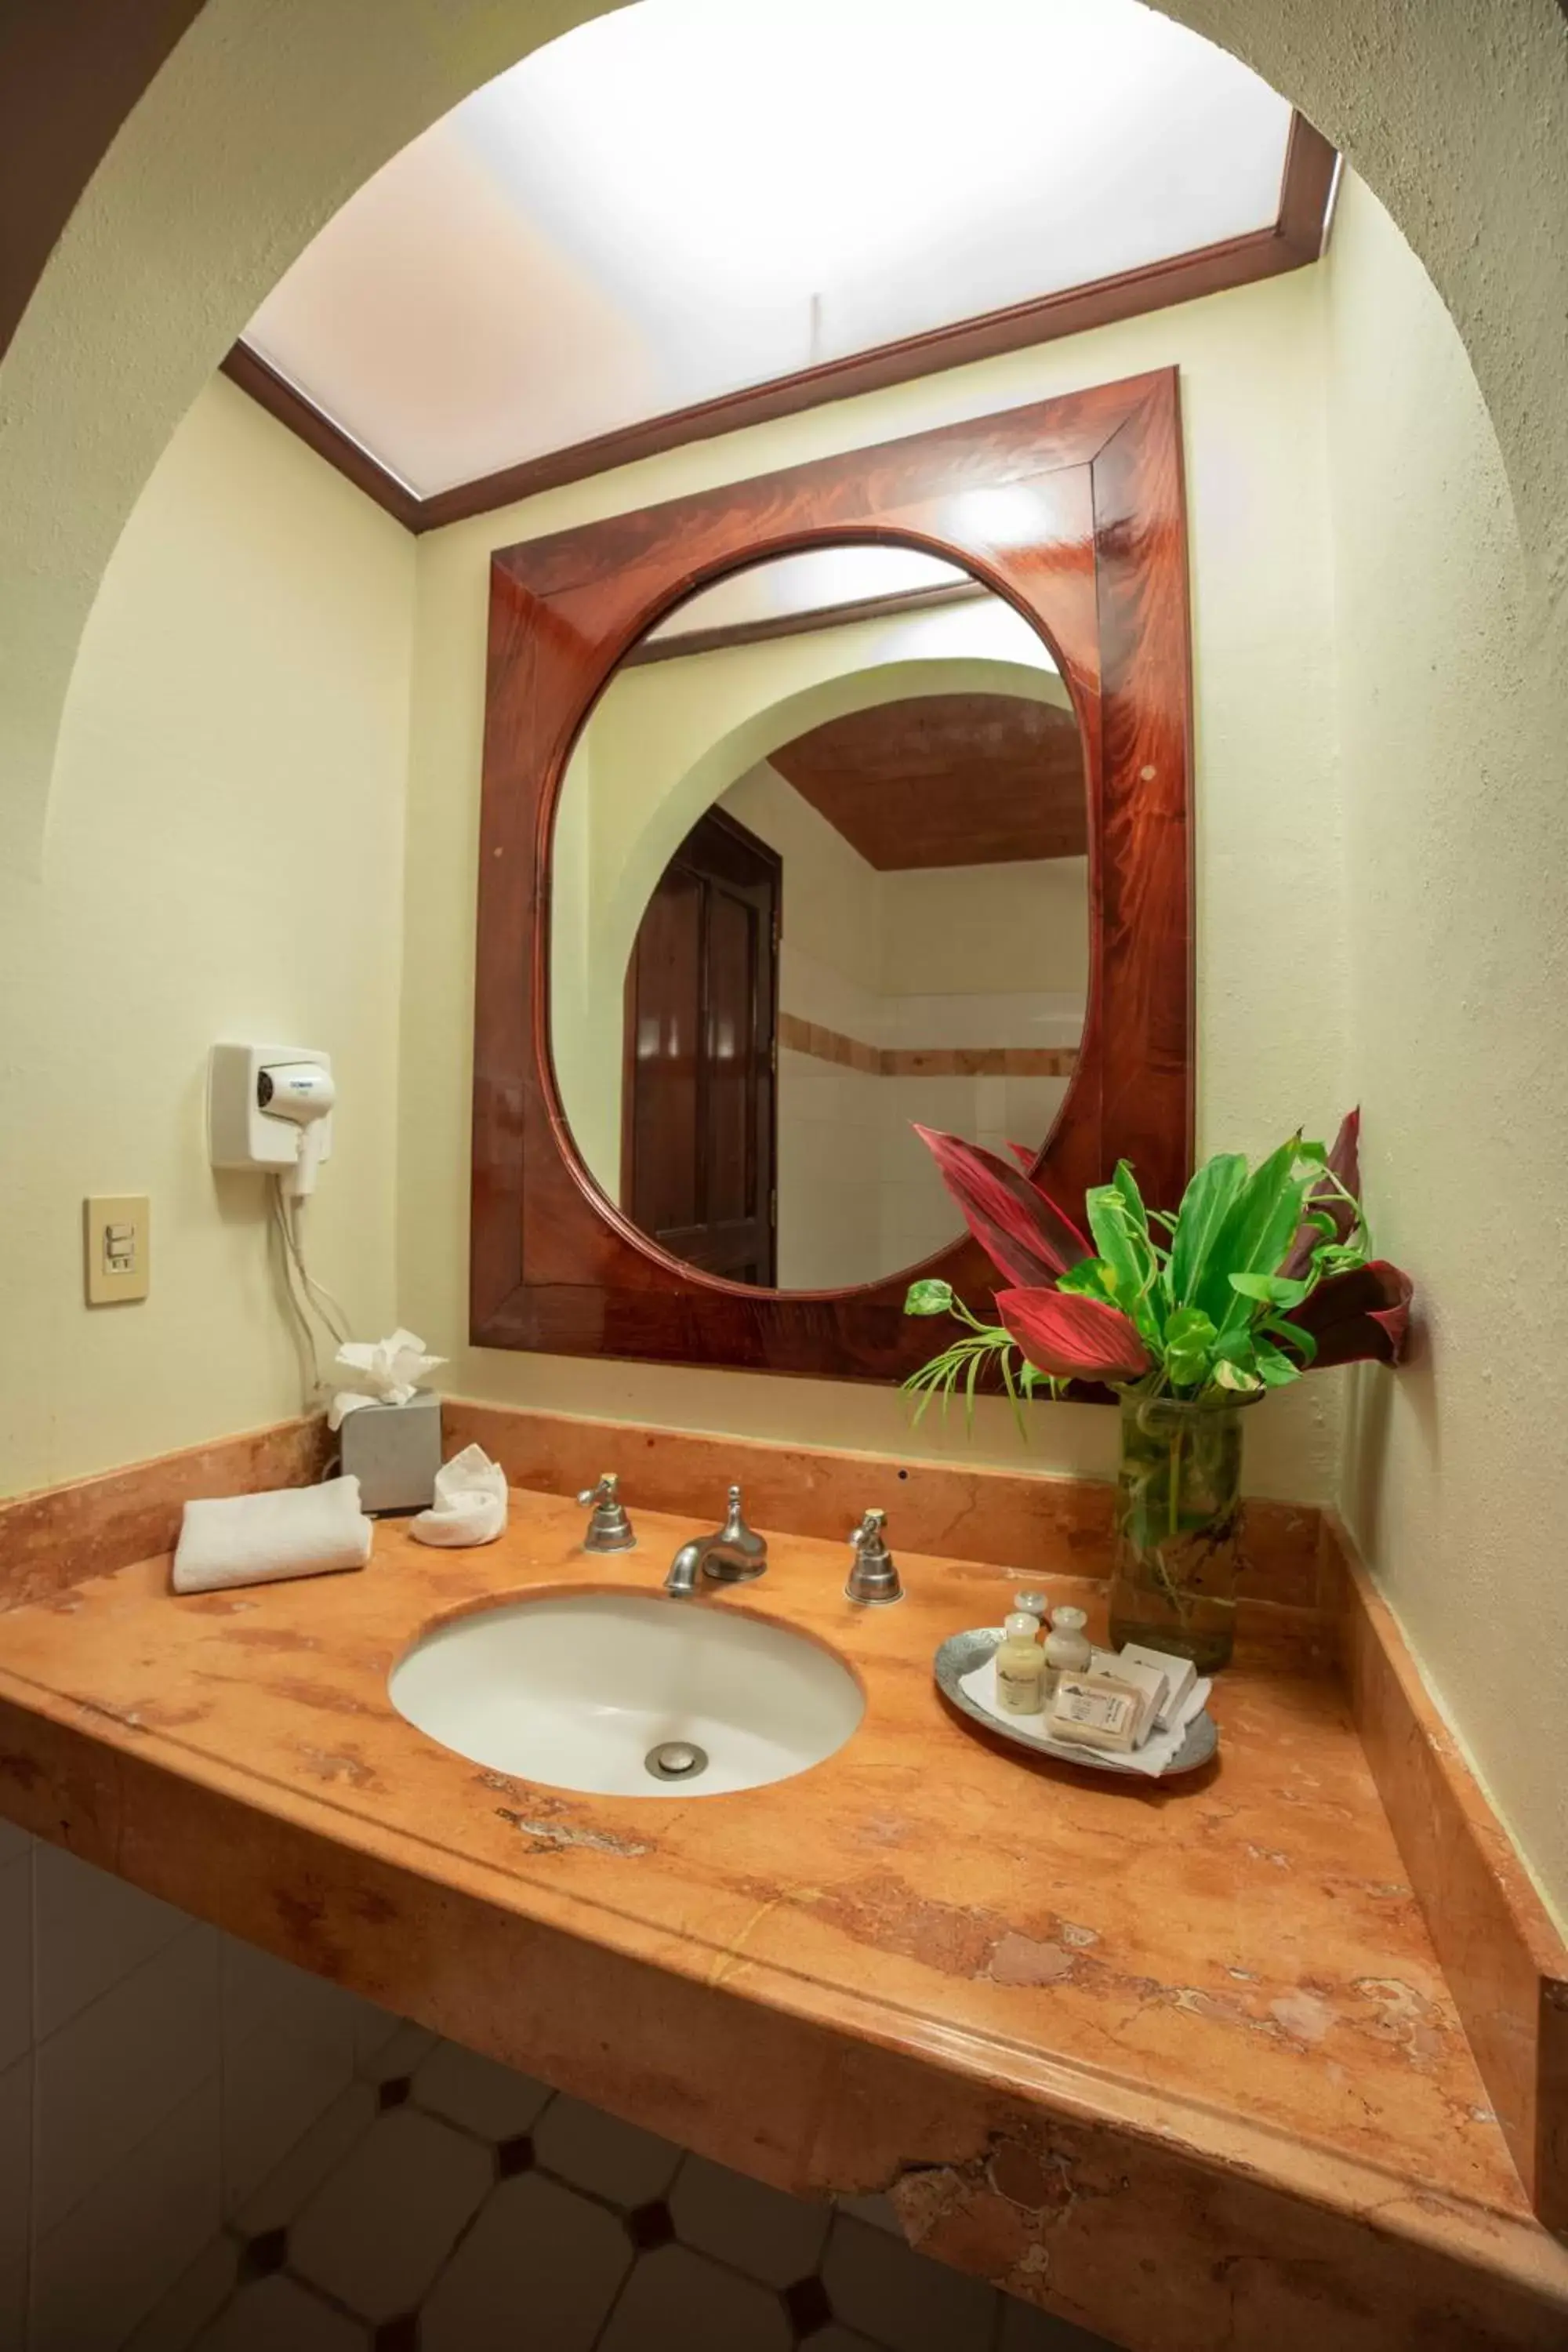 Area and facilities, Bathroom in Hotel Chichen Itza